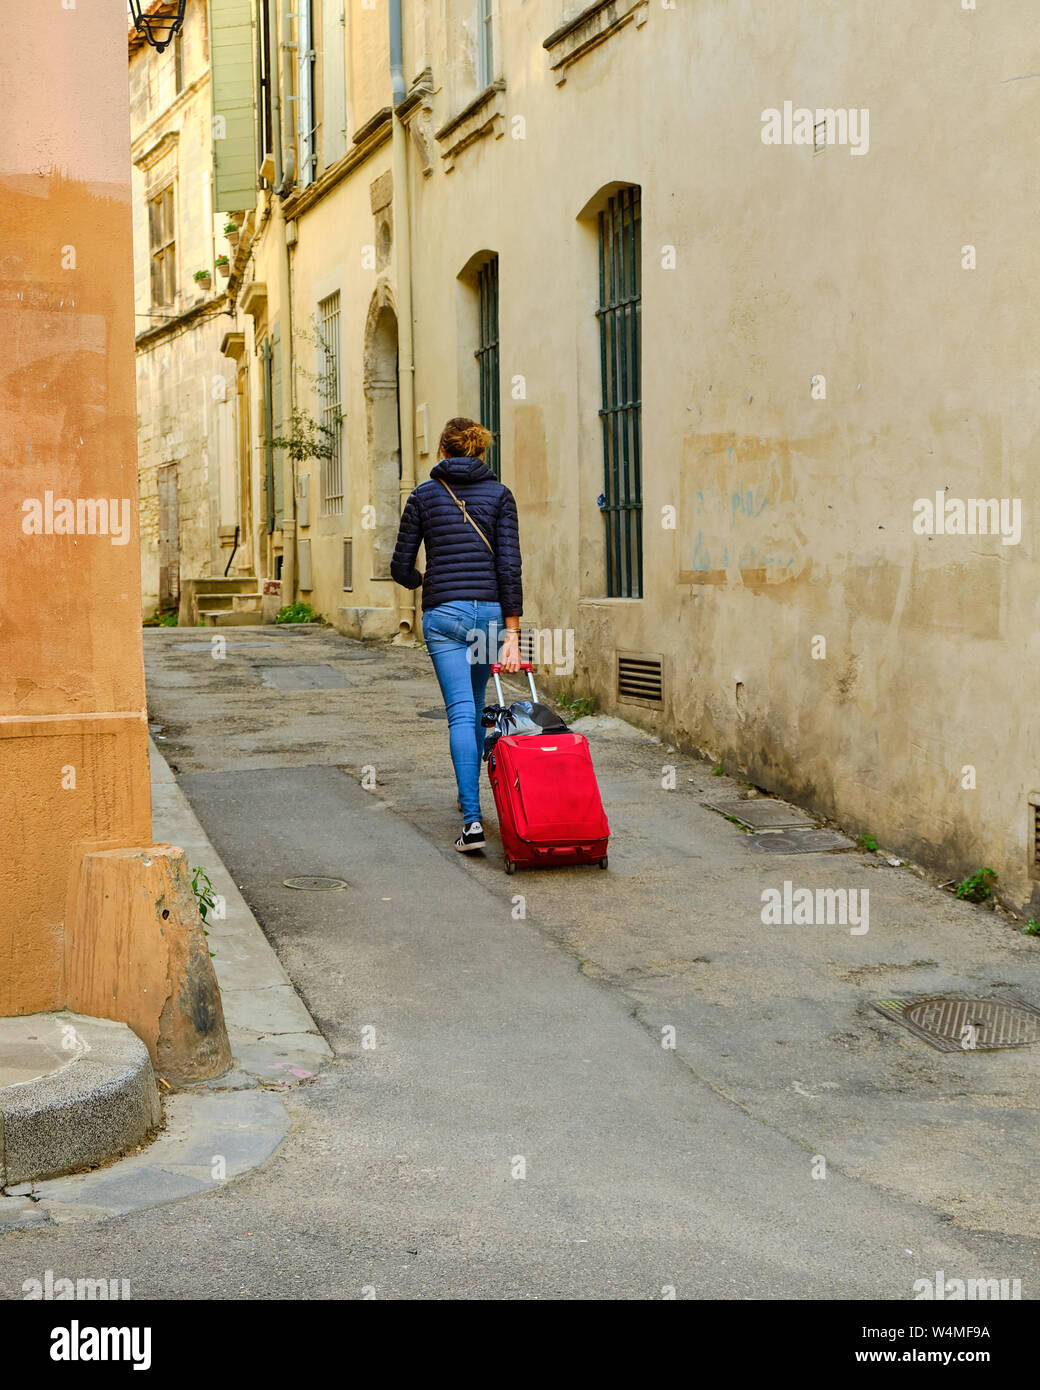 Jeune femme, marche à pied, tirant une valise roulant rouge en bas de la rue étroite de la vieille ville à Arles, France Banque D'Images